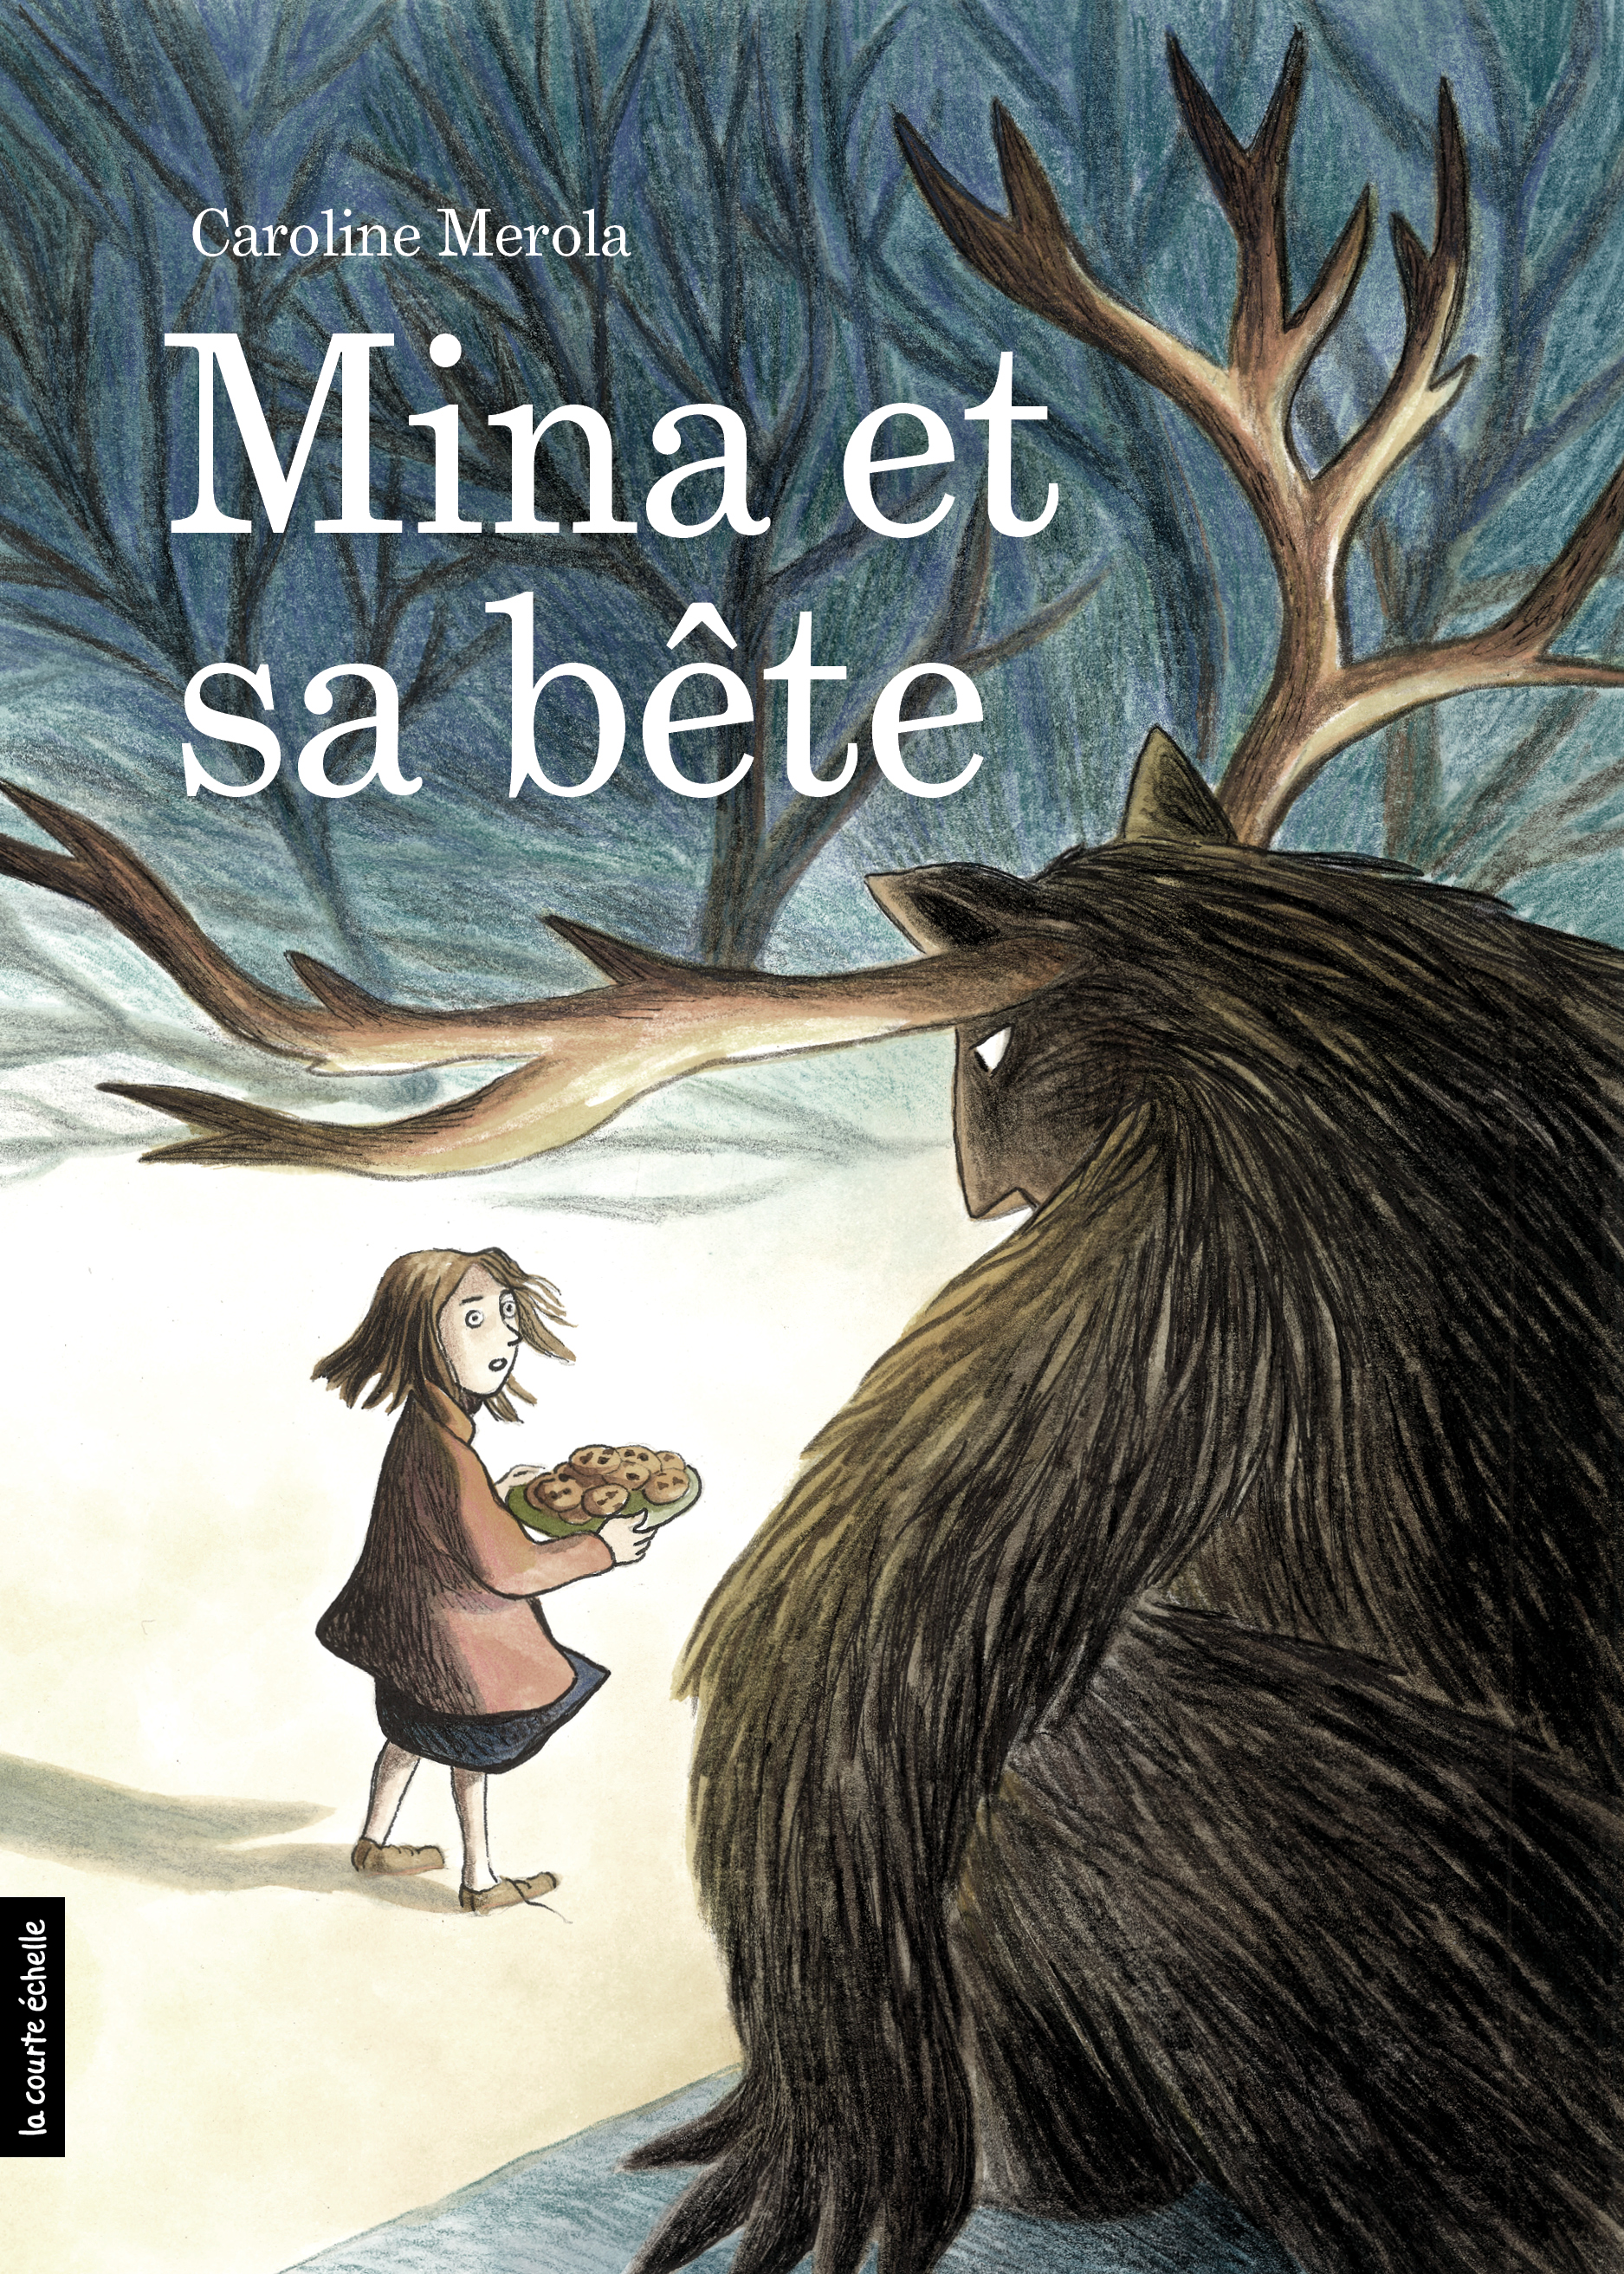 Book cover of MINA ET SA BÉTE